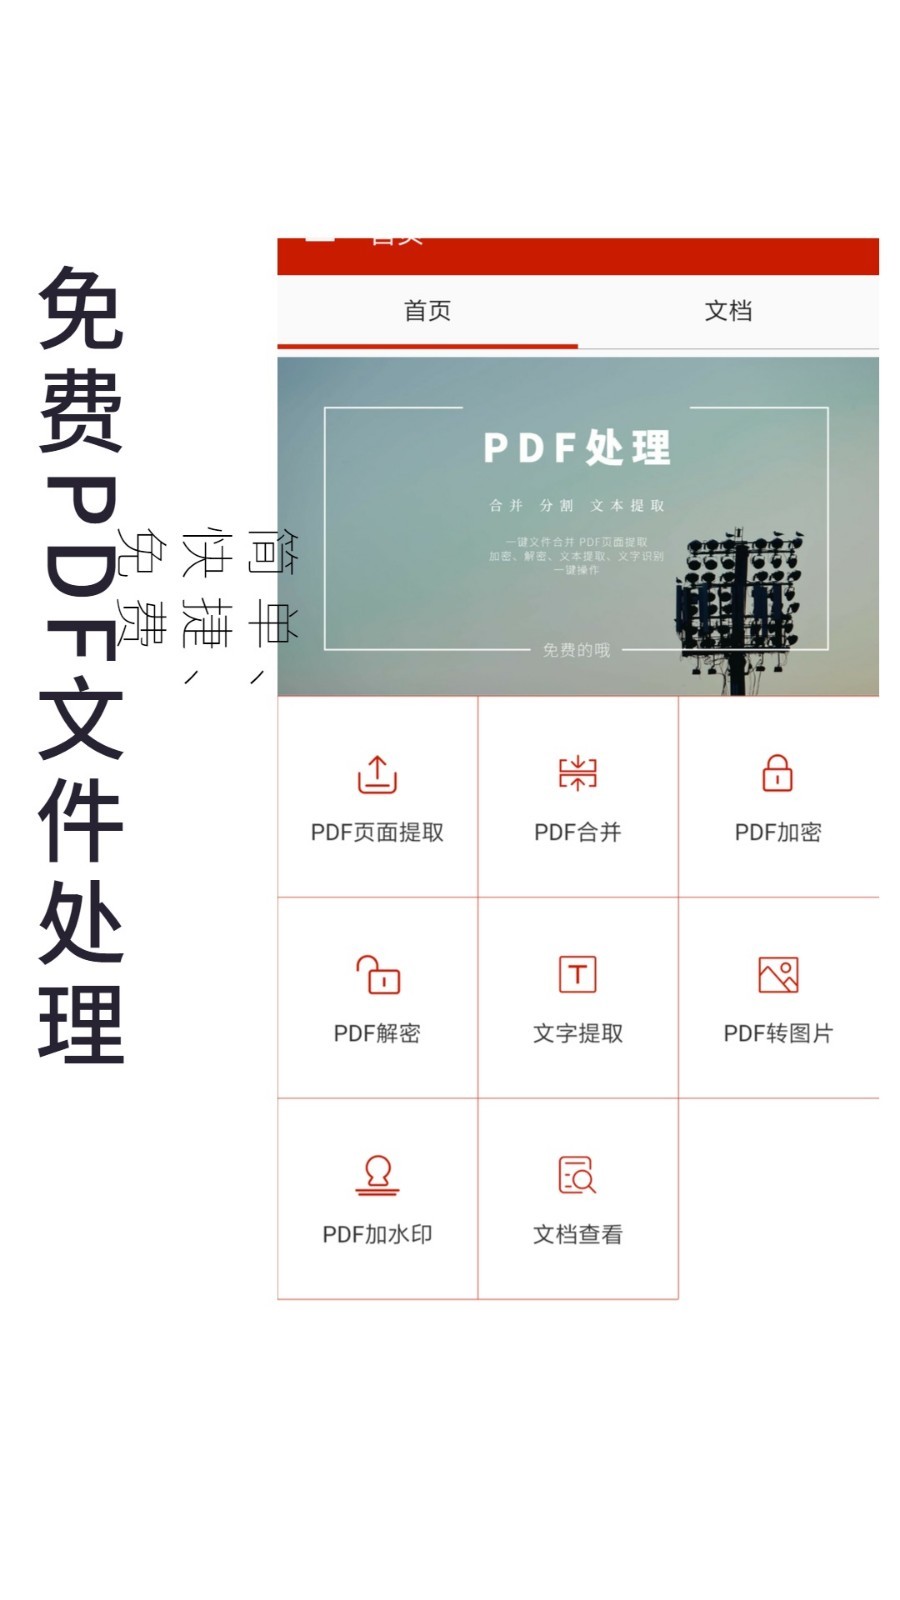 pdf手机助手-01